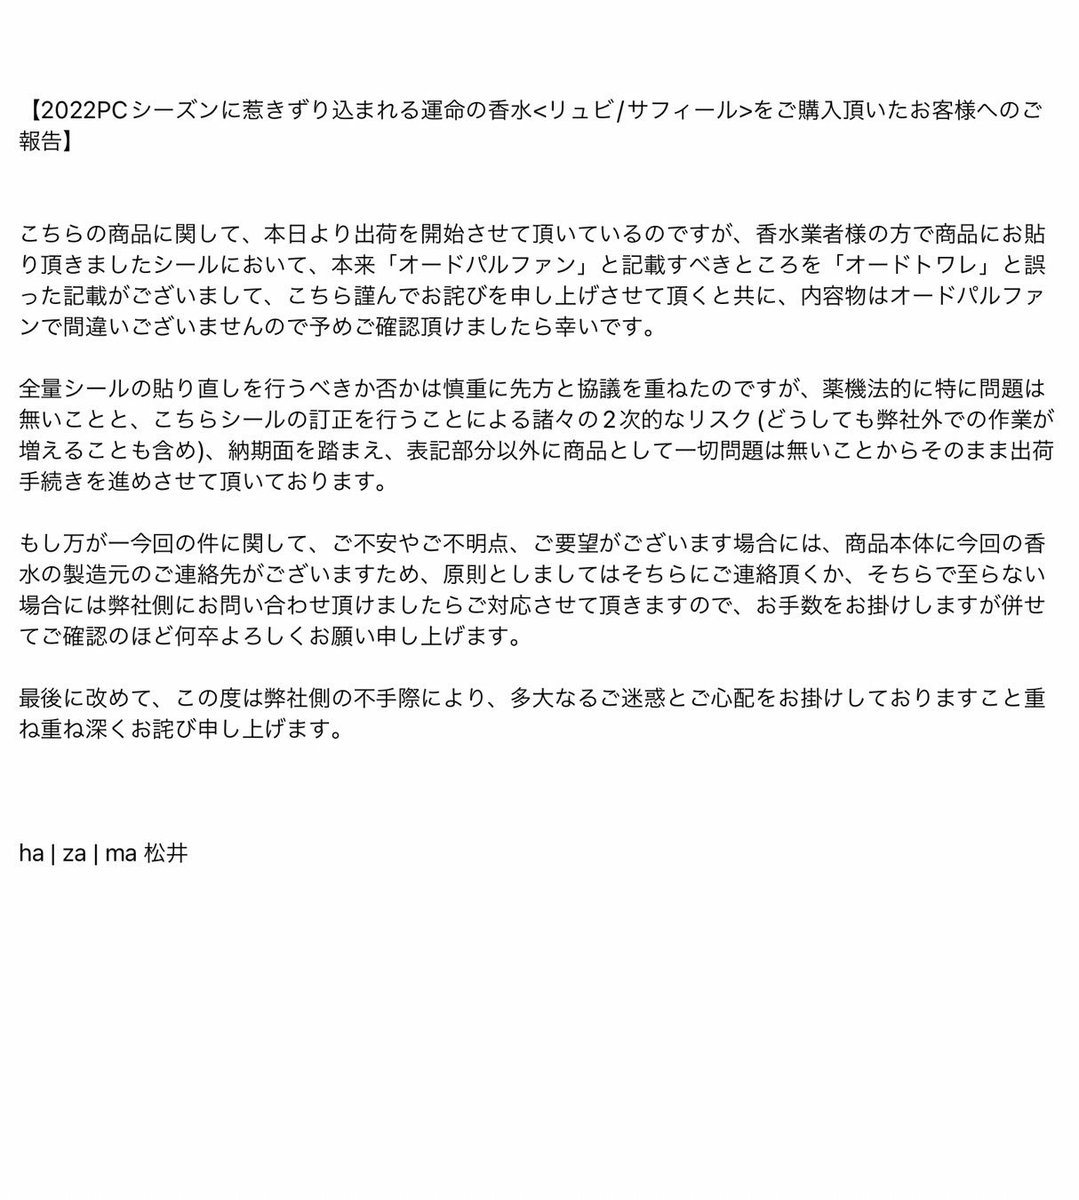 matsui ryosuke | 松井 諒祐 on Twitter: "【2022PCシーズンに惹きずり込まれる運命の香水 をご購入頂いたお客様へのご報告】"